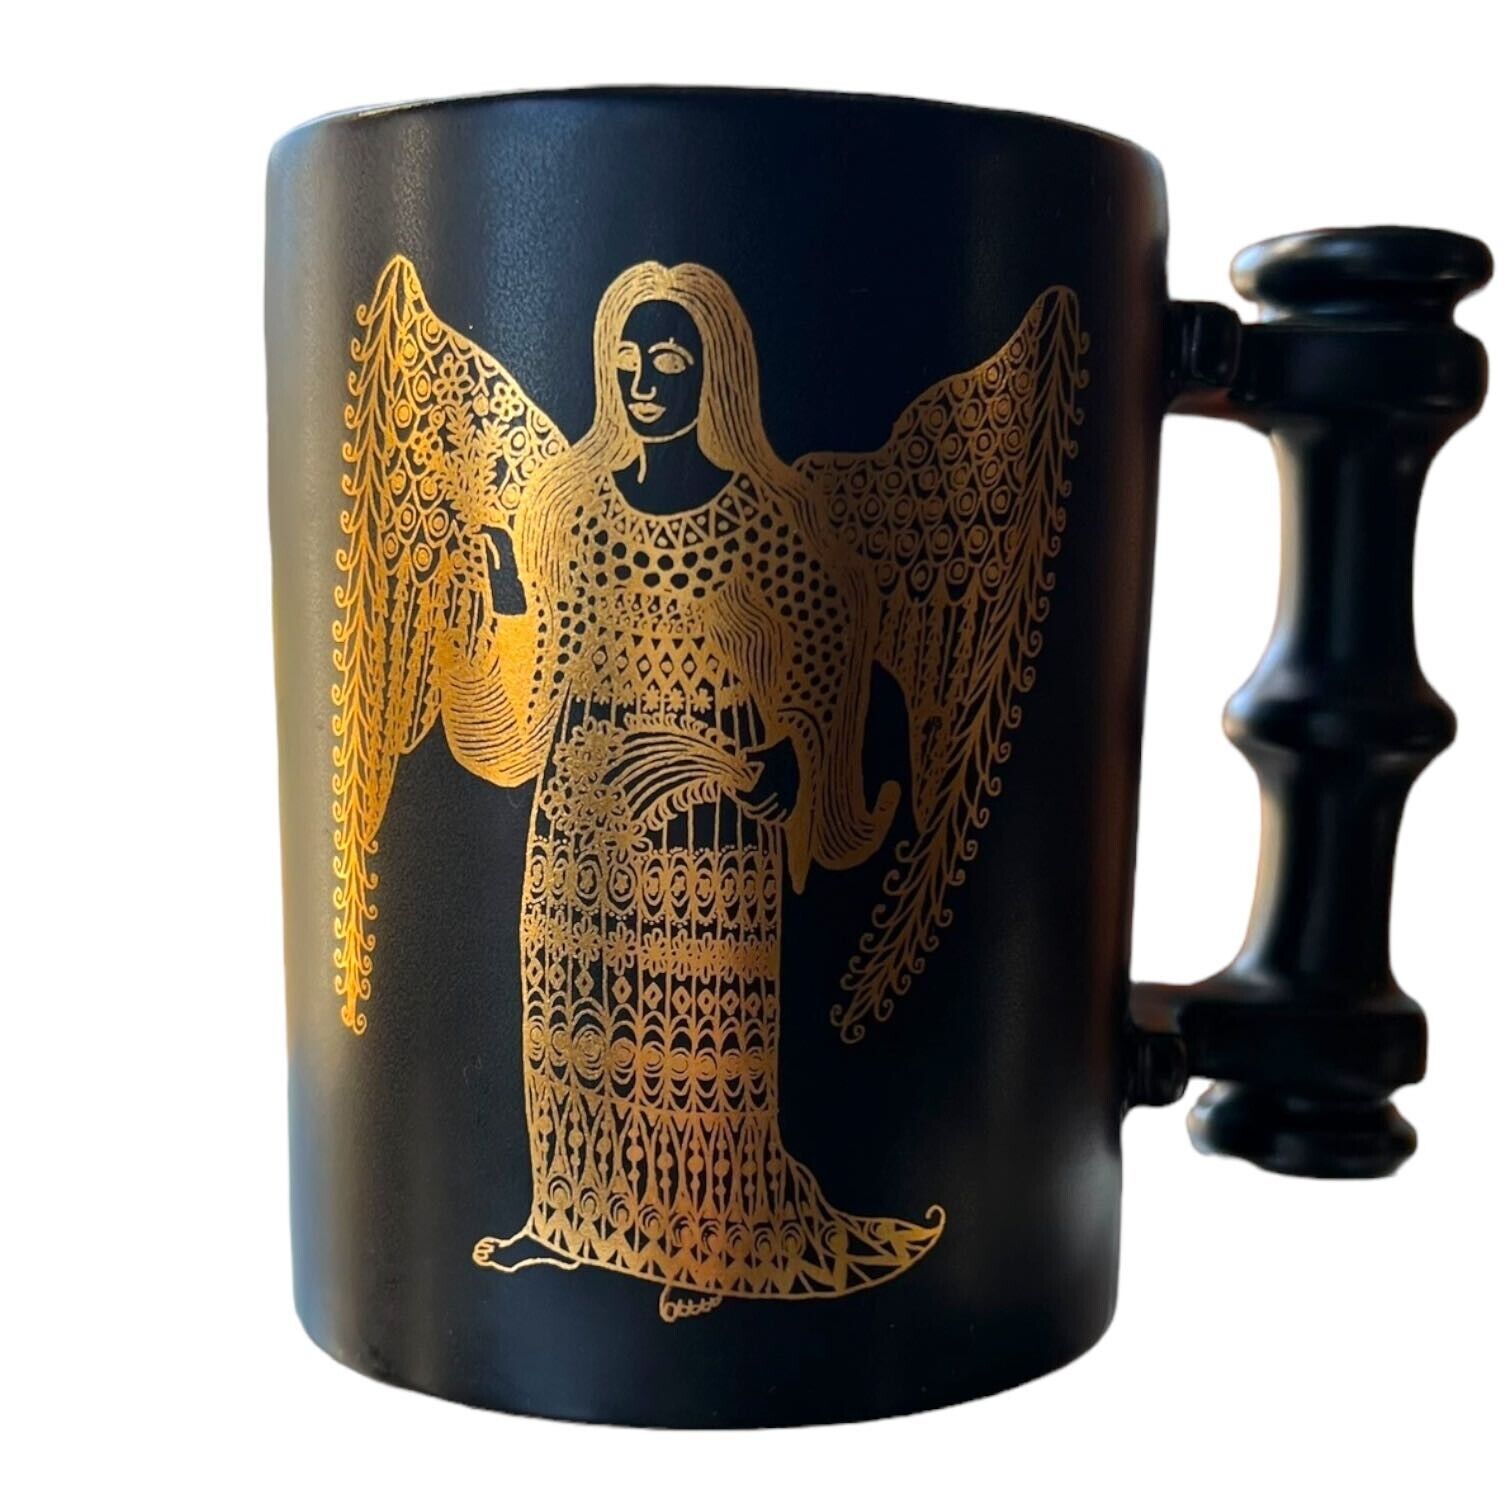 Portmeiron Pottery Zodiac by John Cuffley Virgo the Virgin Gold Black Mug